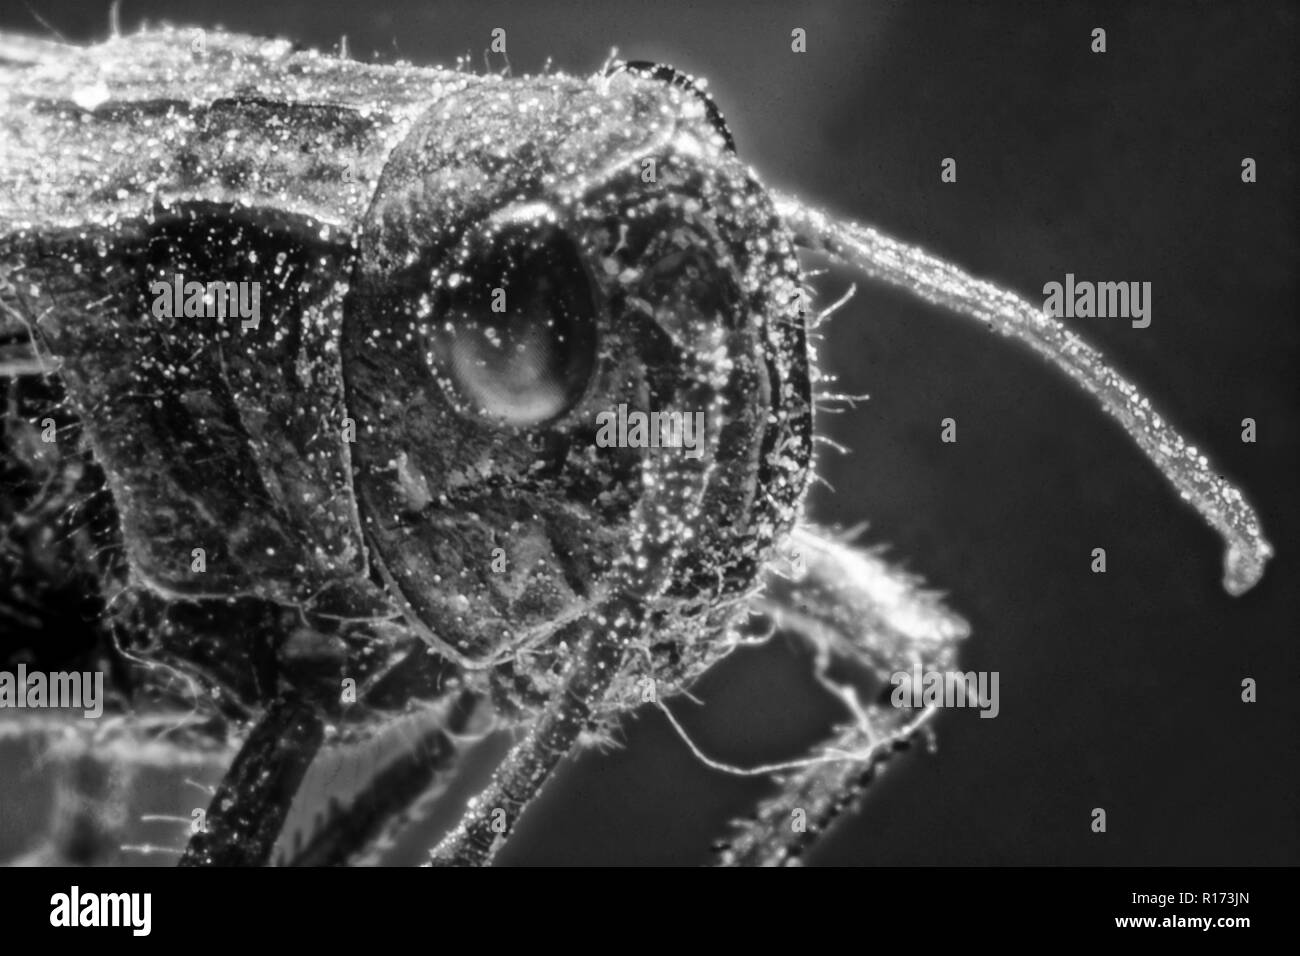 Sauterelle (photo) Tettigonioidea superfamille,insectes, cricket durs depuis longtemps sous-ordre Banque D'Images